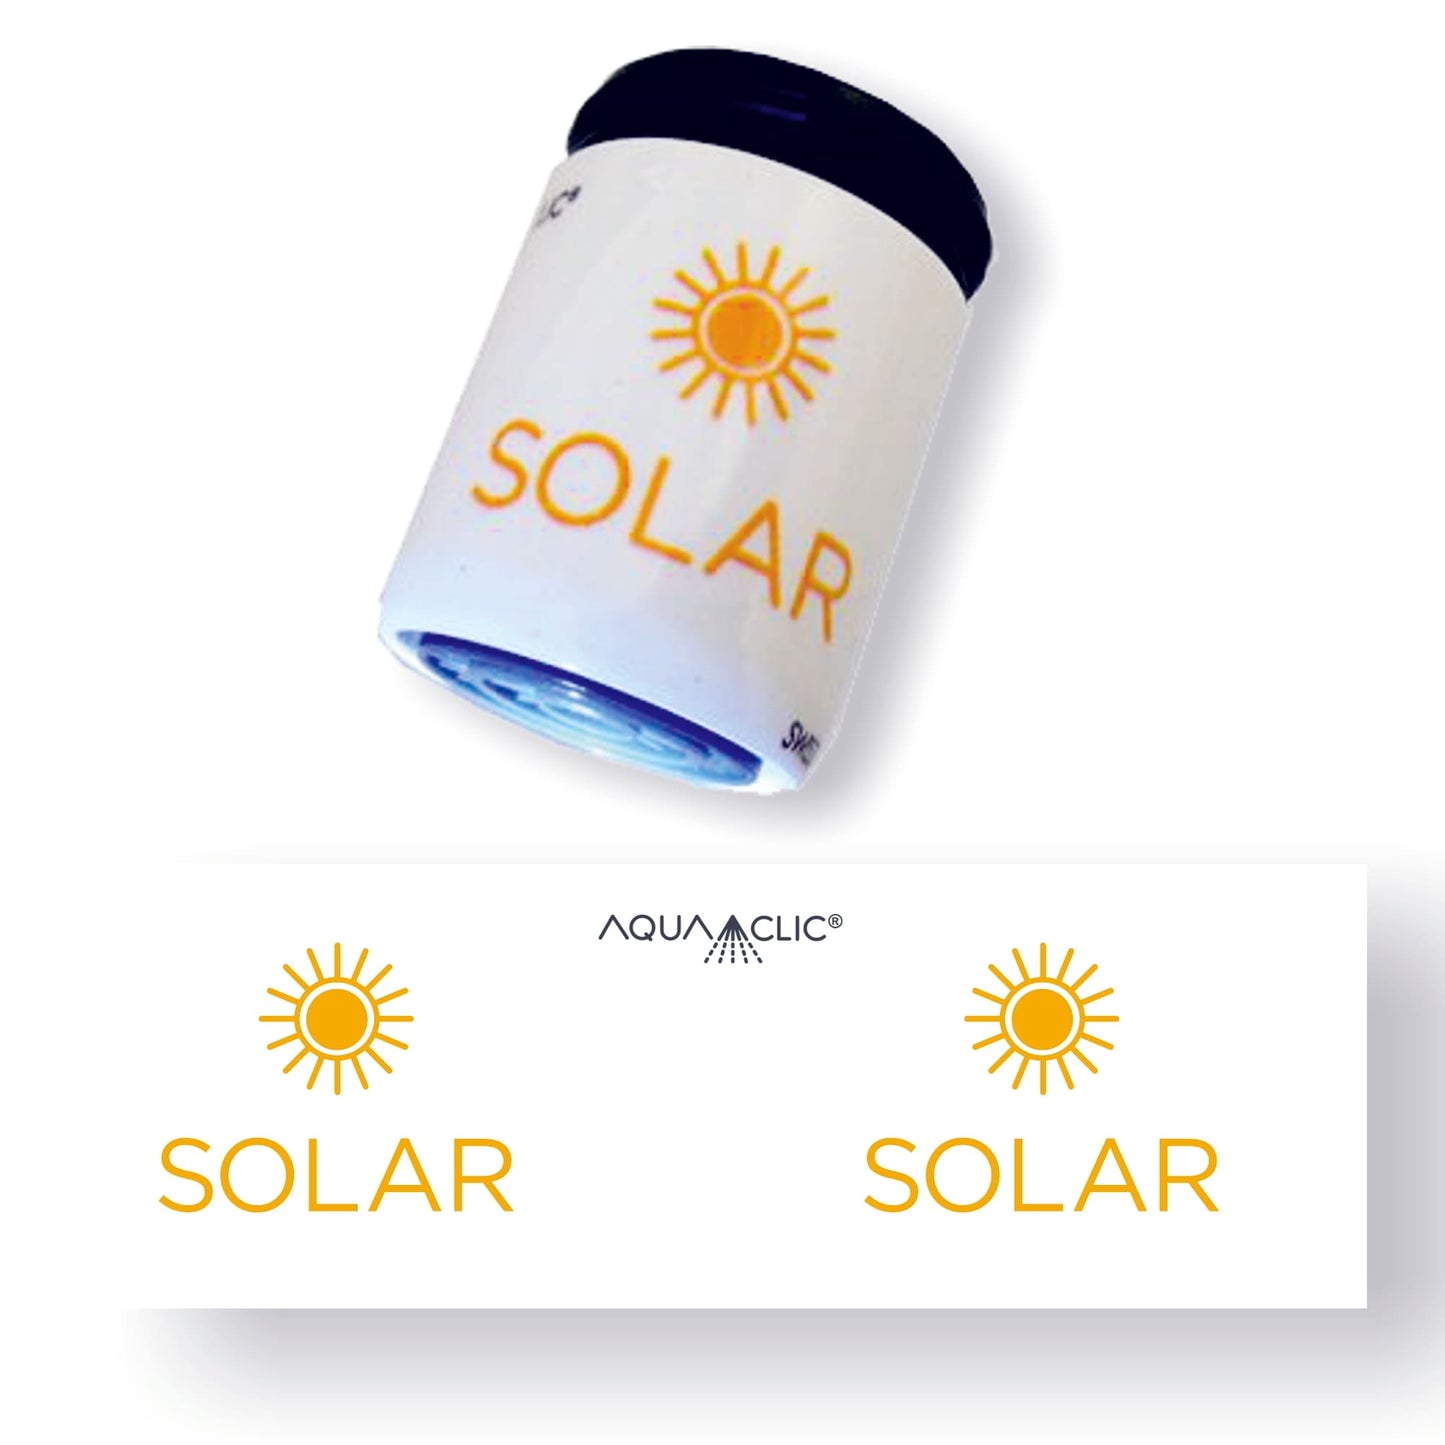 DAssociation Sdes professionnels de l'énergie solaire: Swiss Solaruisse, dessin du AquaClic et le Layout